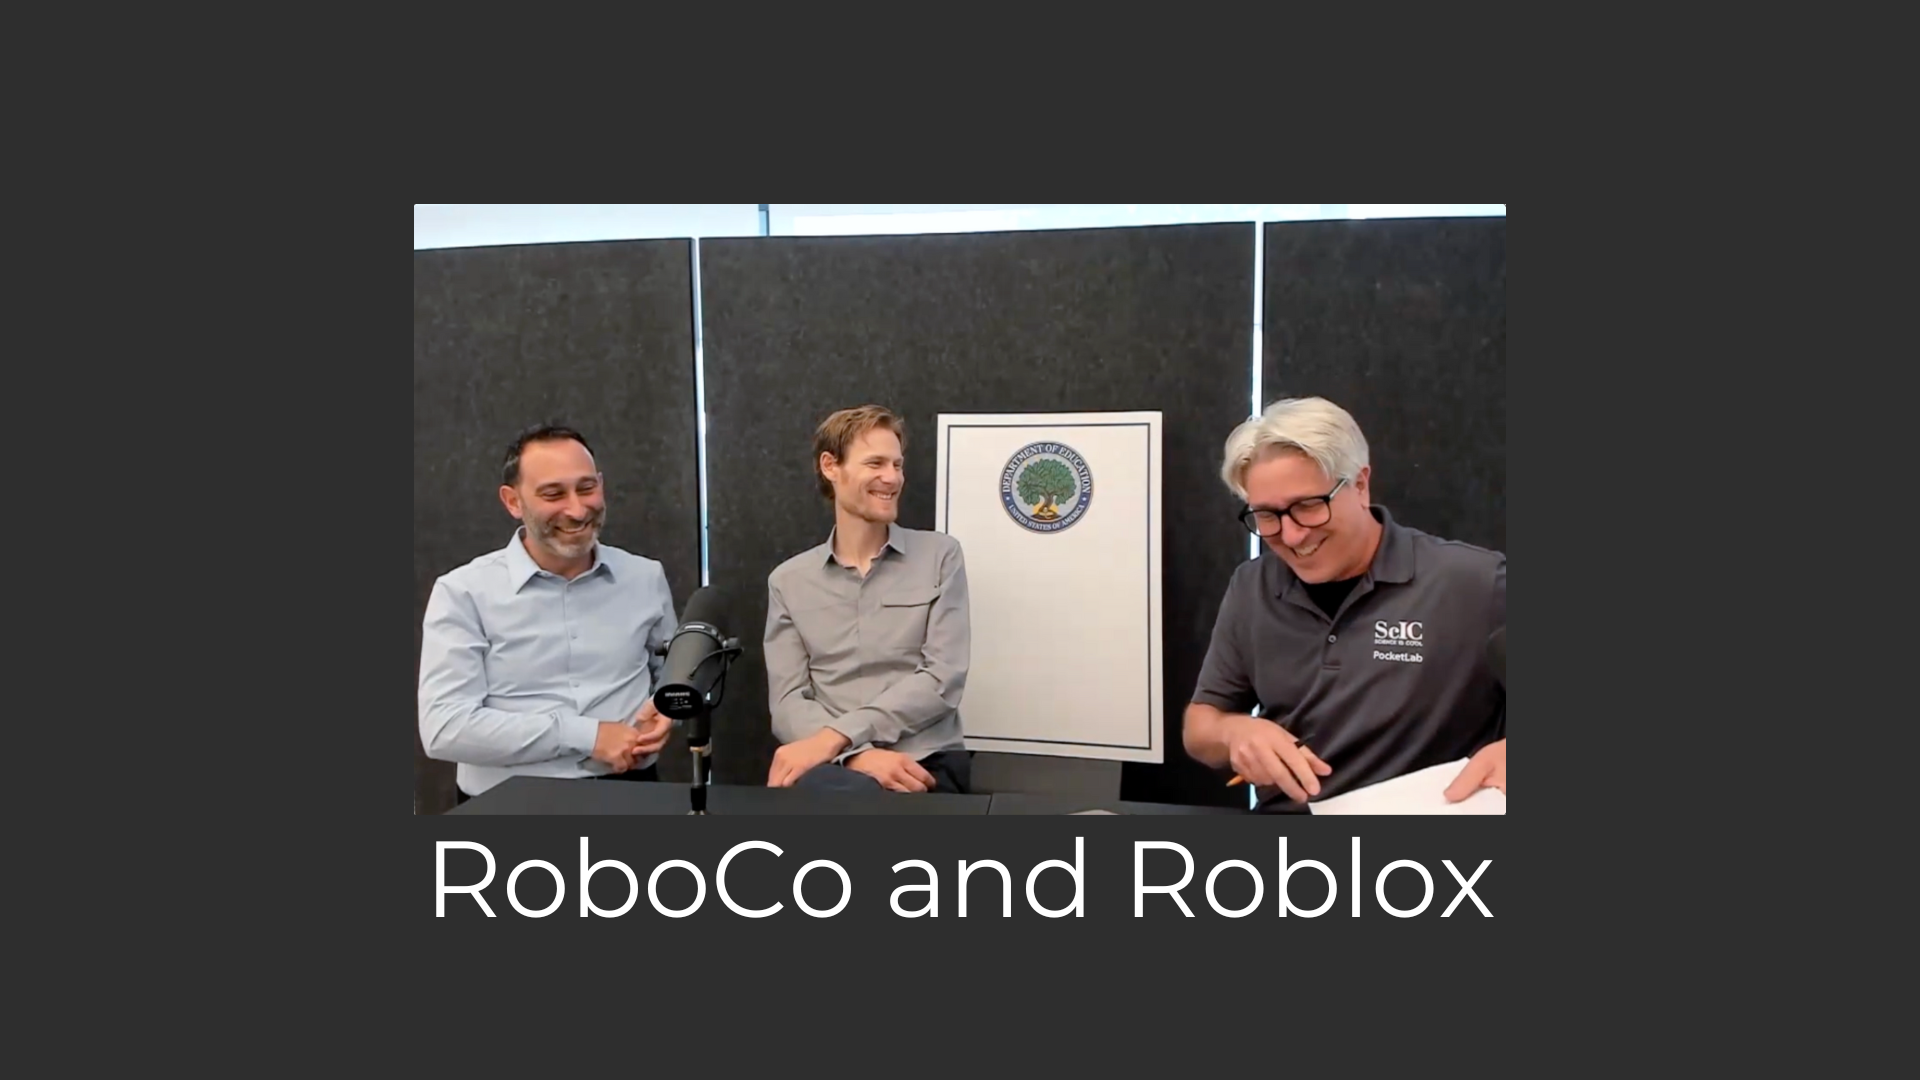 RoboCo Sports League Roblox Filament games Adam Seldow Dan White